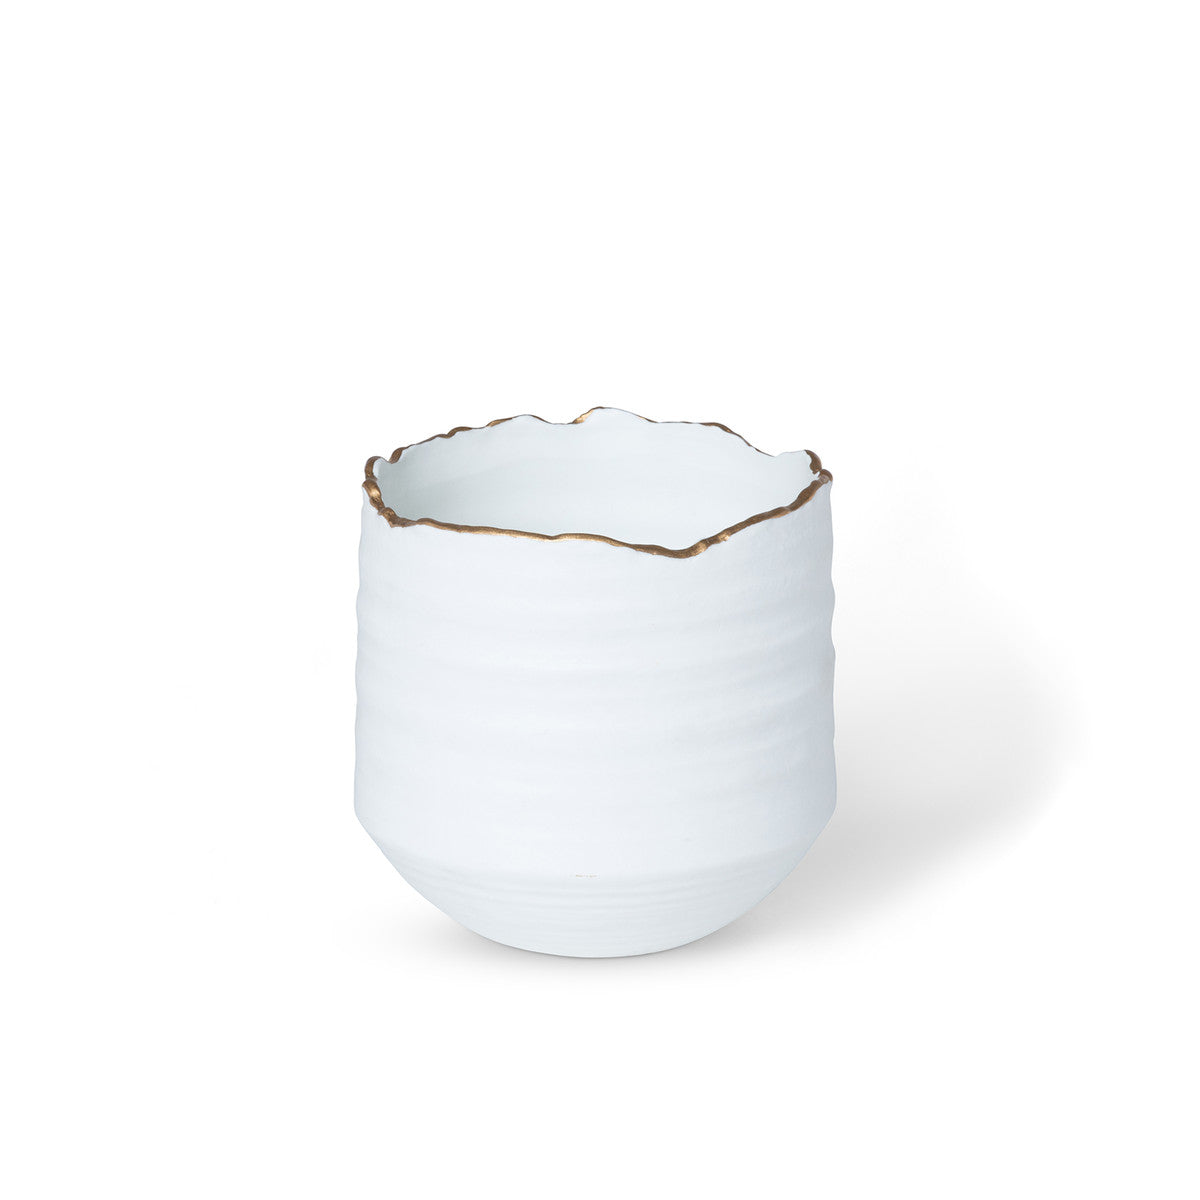 Gilded White Porcelain Organic Edge Pot, 5"